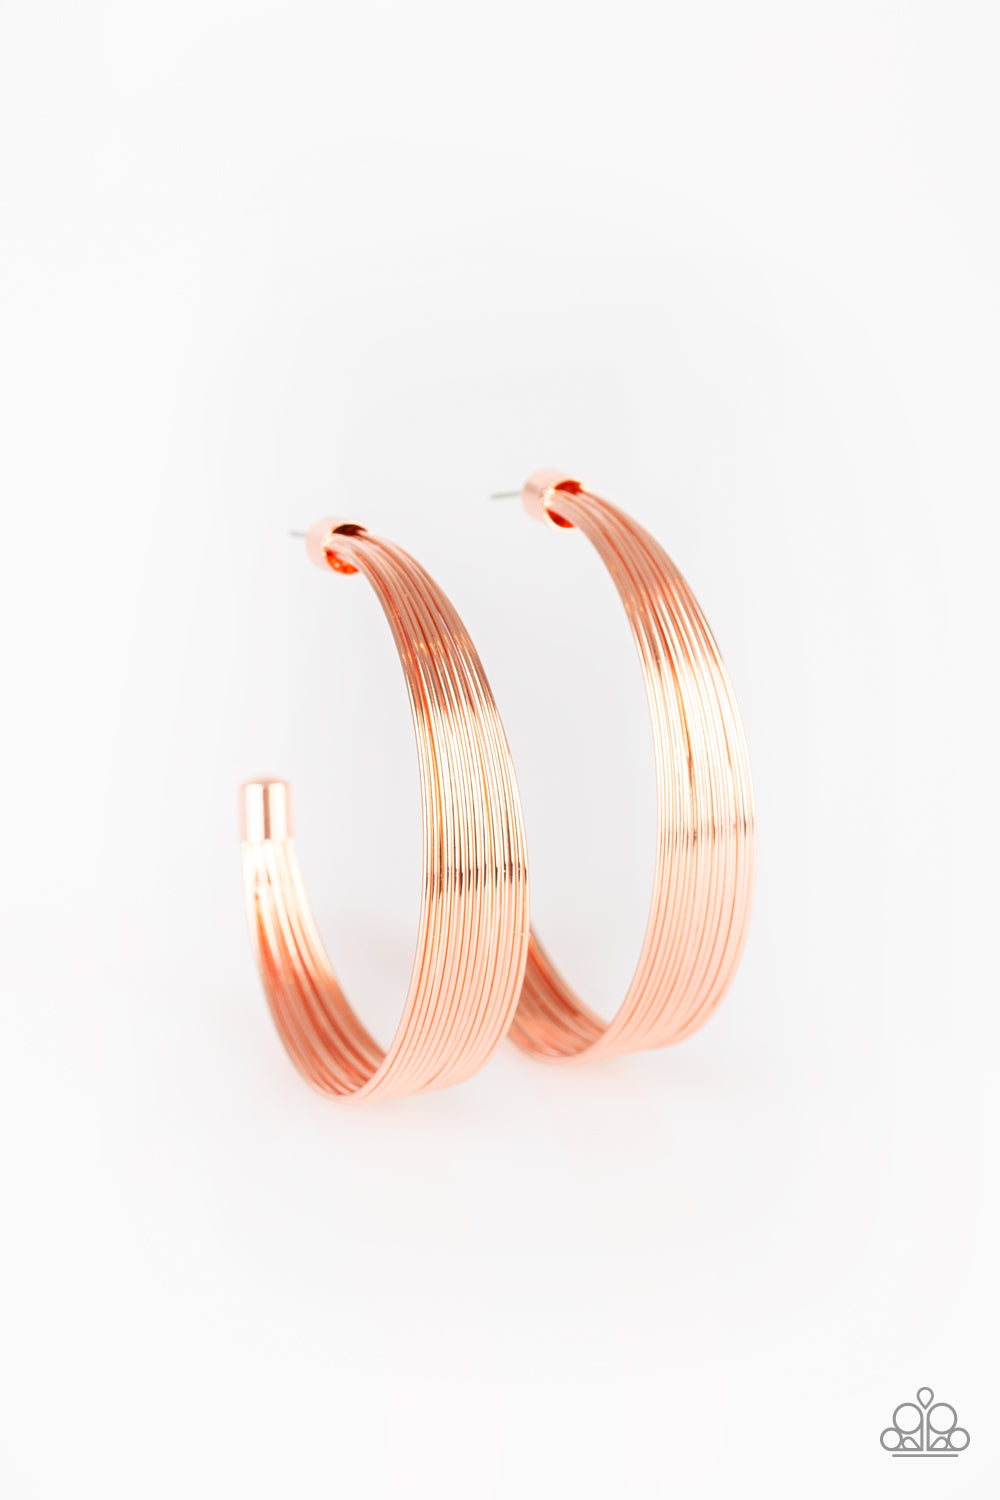 Live Wire - Copper